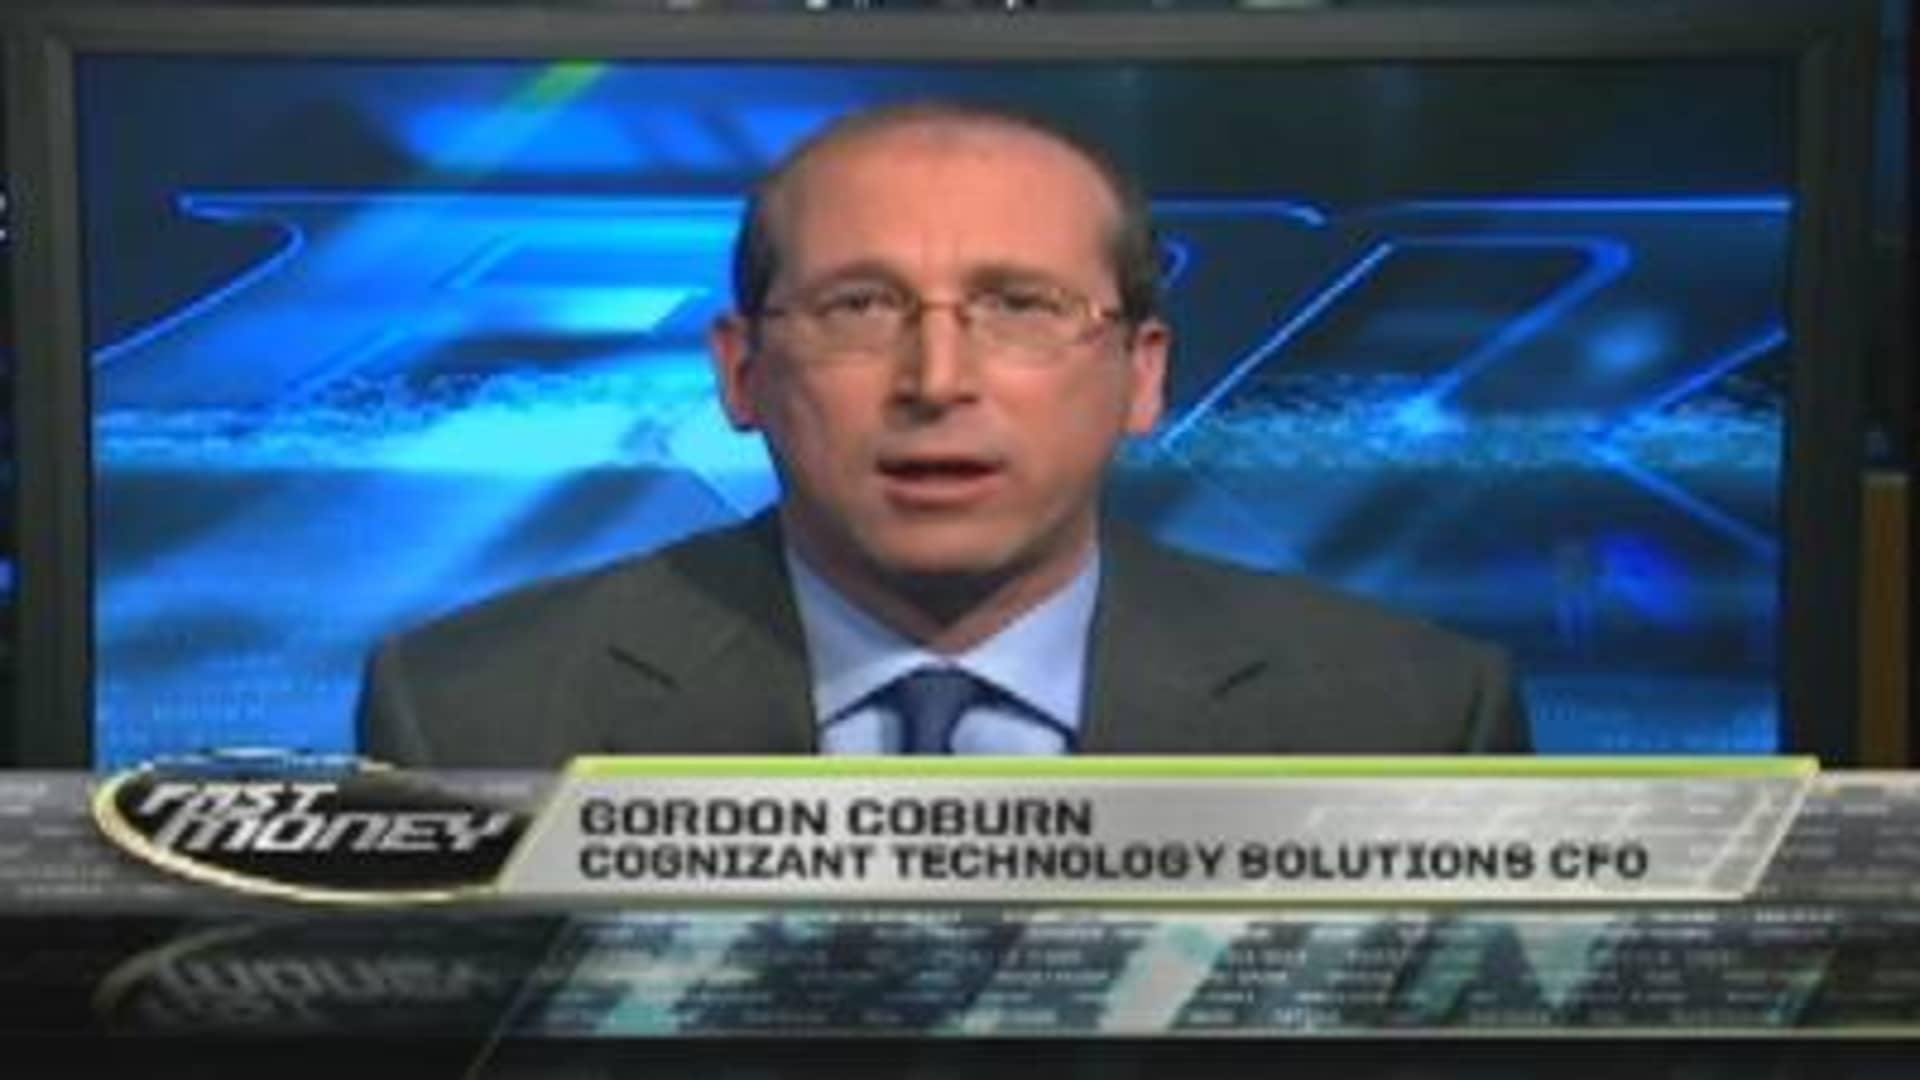 Gordon coburn cognizant cognizant ransomware attack 2020